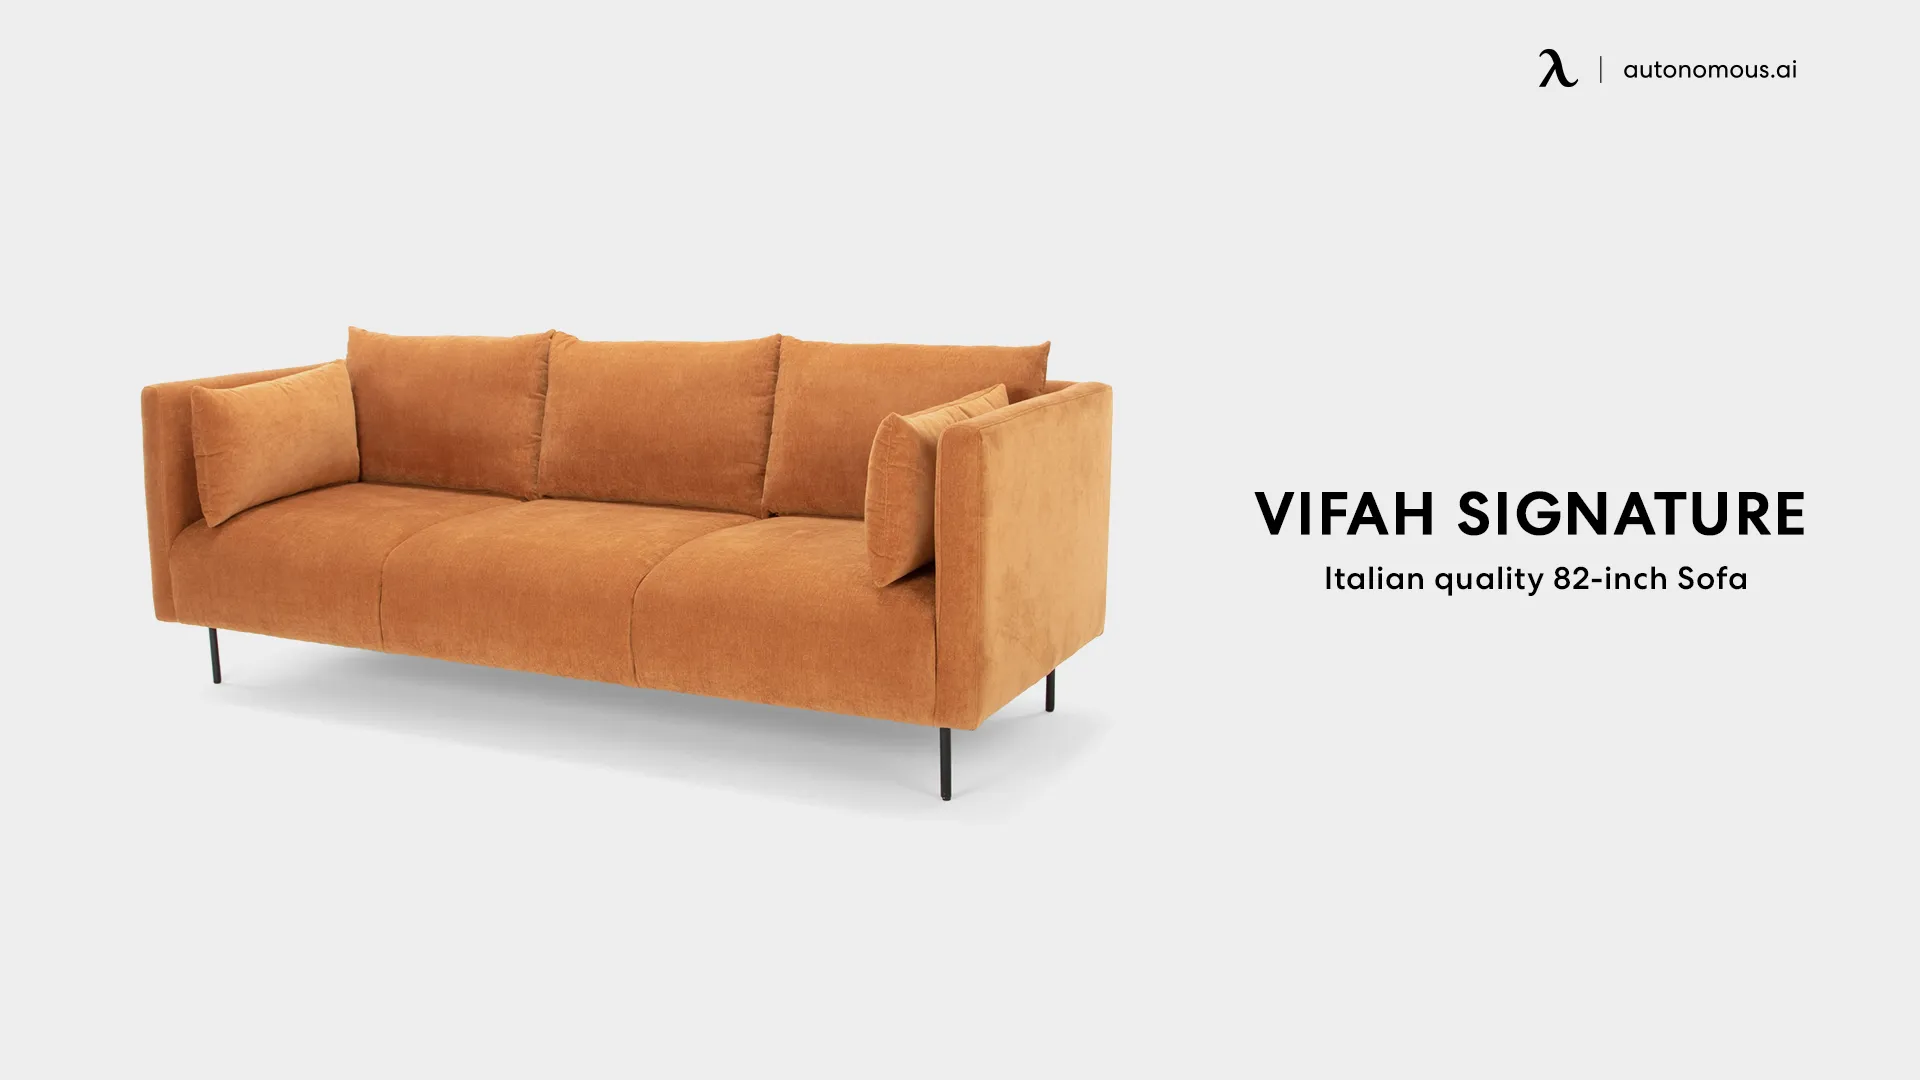 VIFAH SIGNATURE 82-inch Italian design sofa